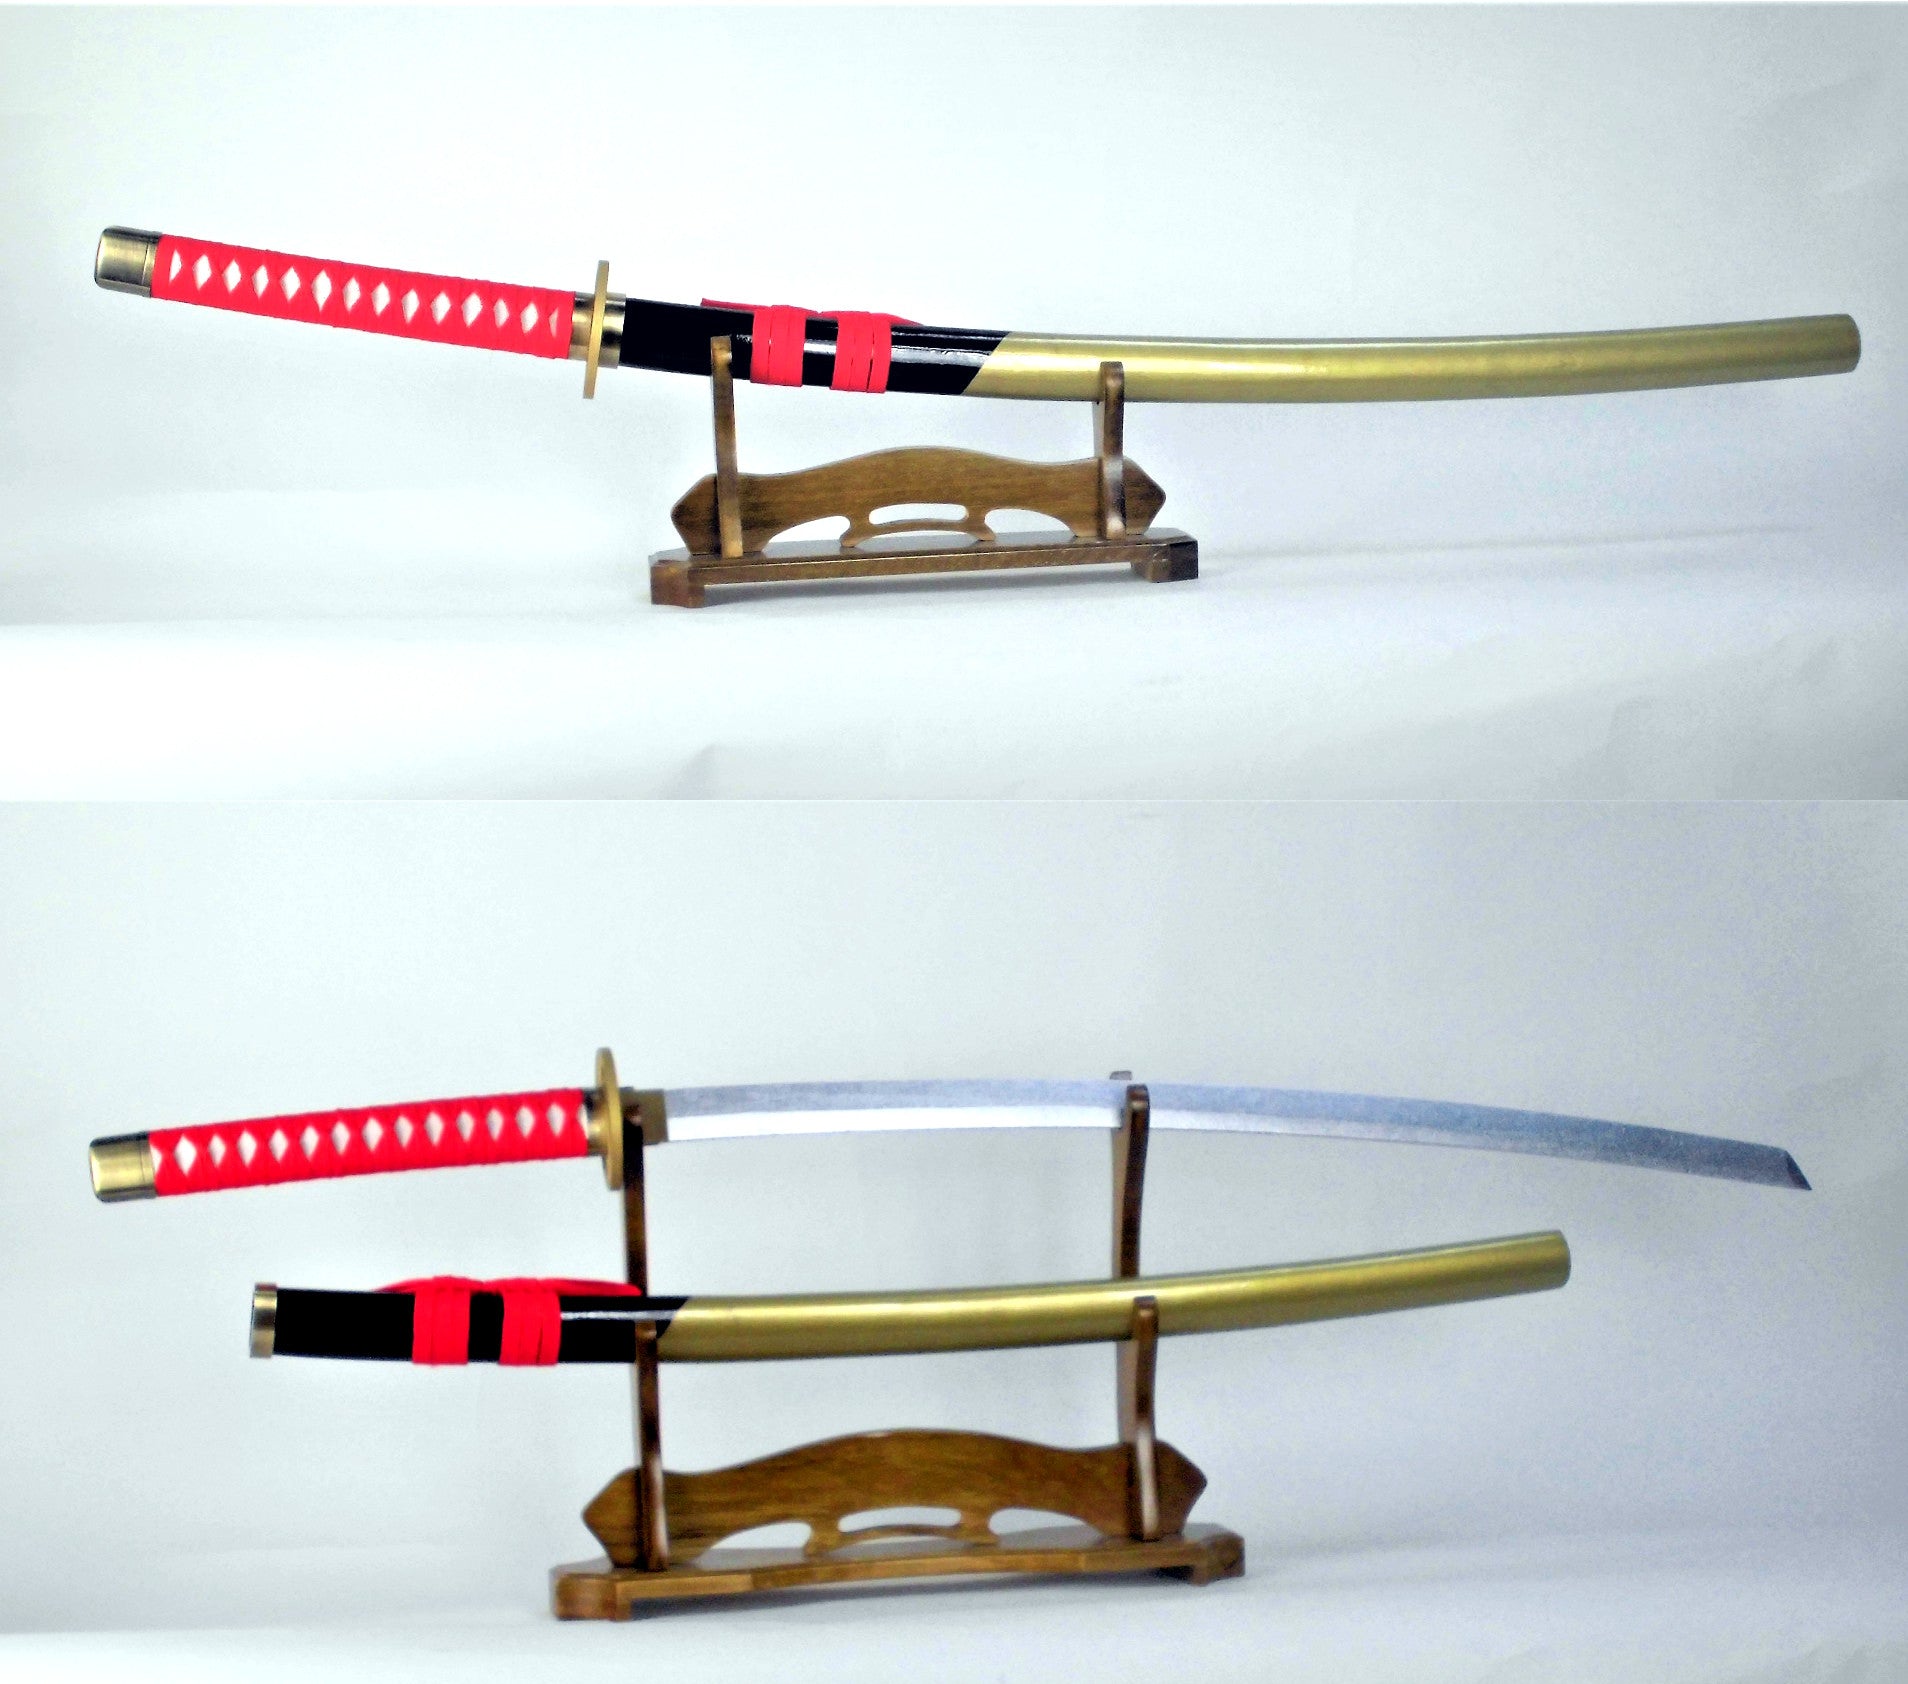 へし切長谷部 へしきりはせべ 日本刀 模造刀 武士刀 木製 木 コスプレ 